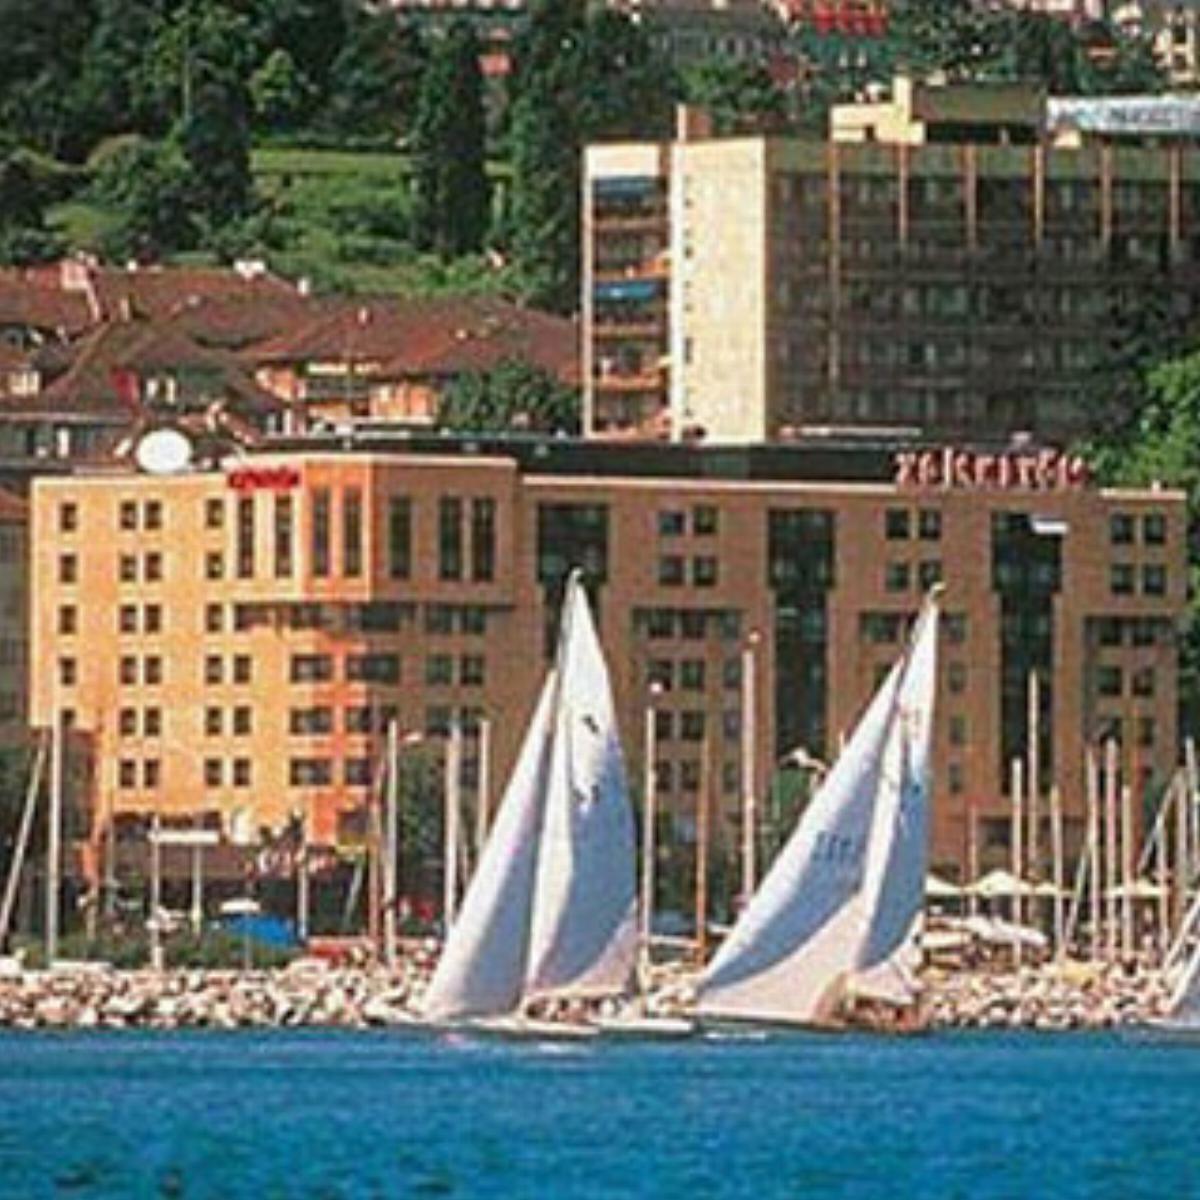 Mövenpick Hotel Lausanne Hotel Lausanne Switzerland